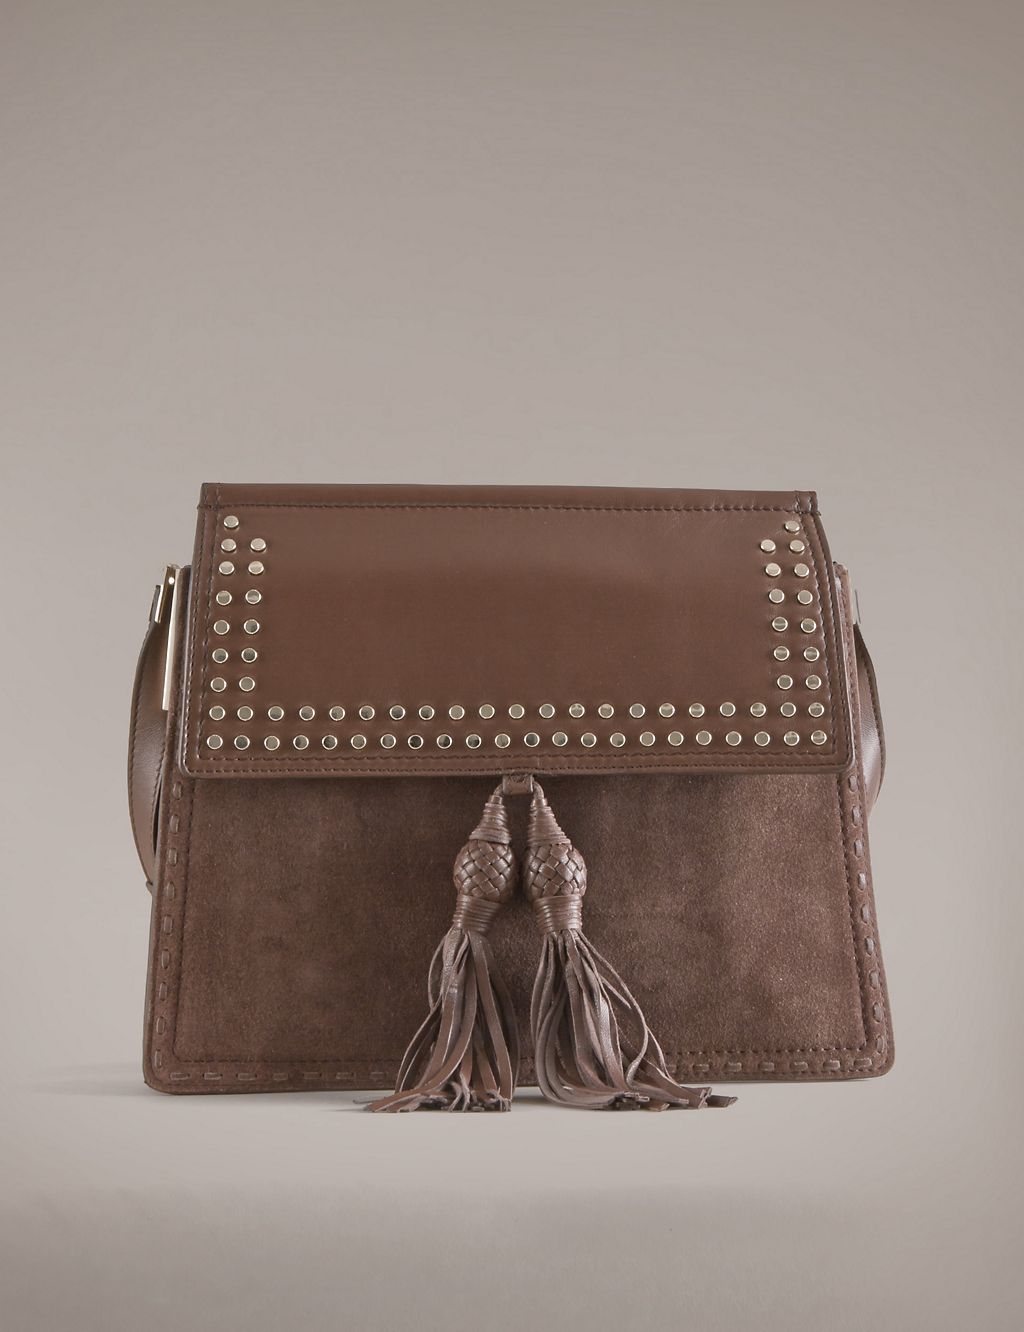 Leather Studded Shoulder Bag 3 of 4